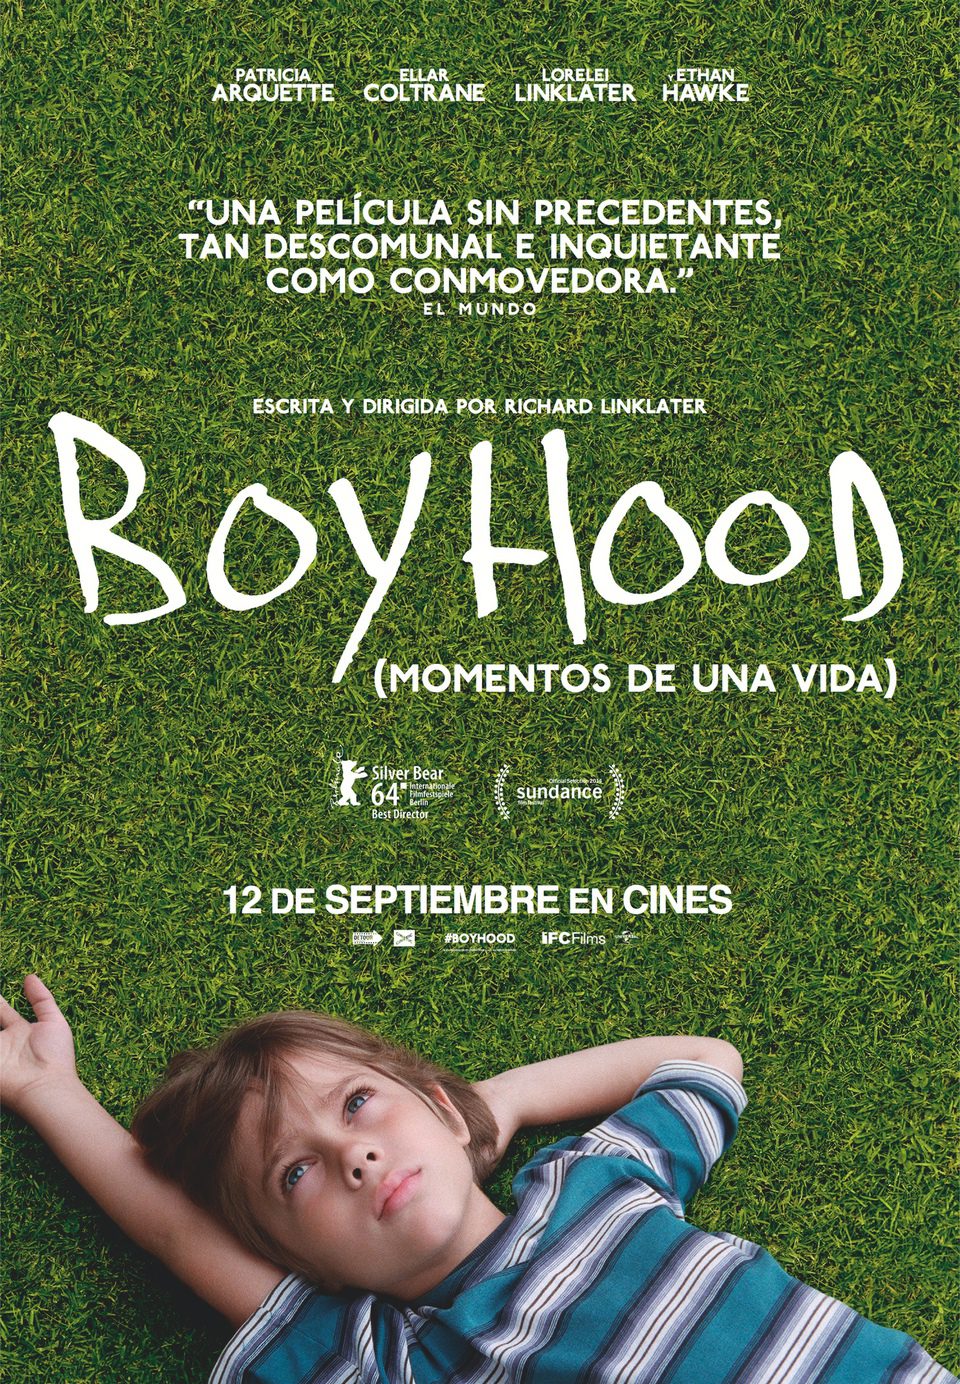 Boyhood (Momentos de una vida)